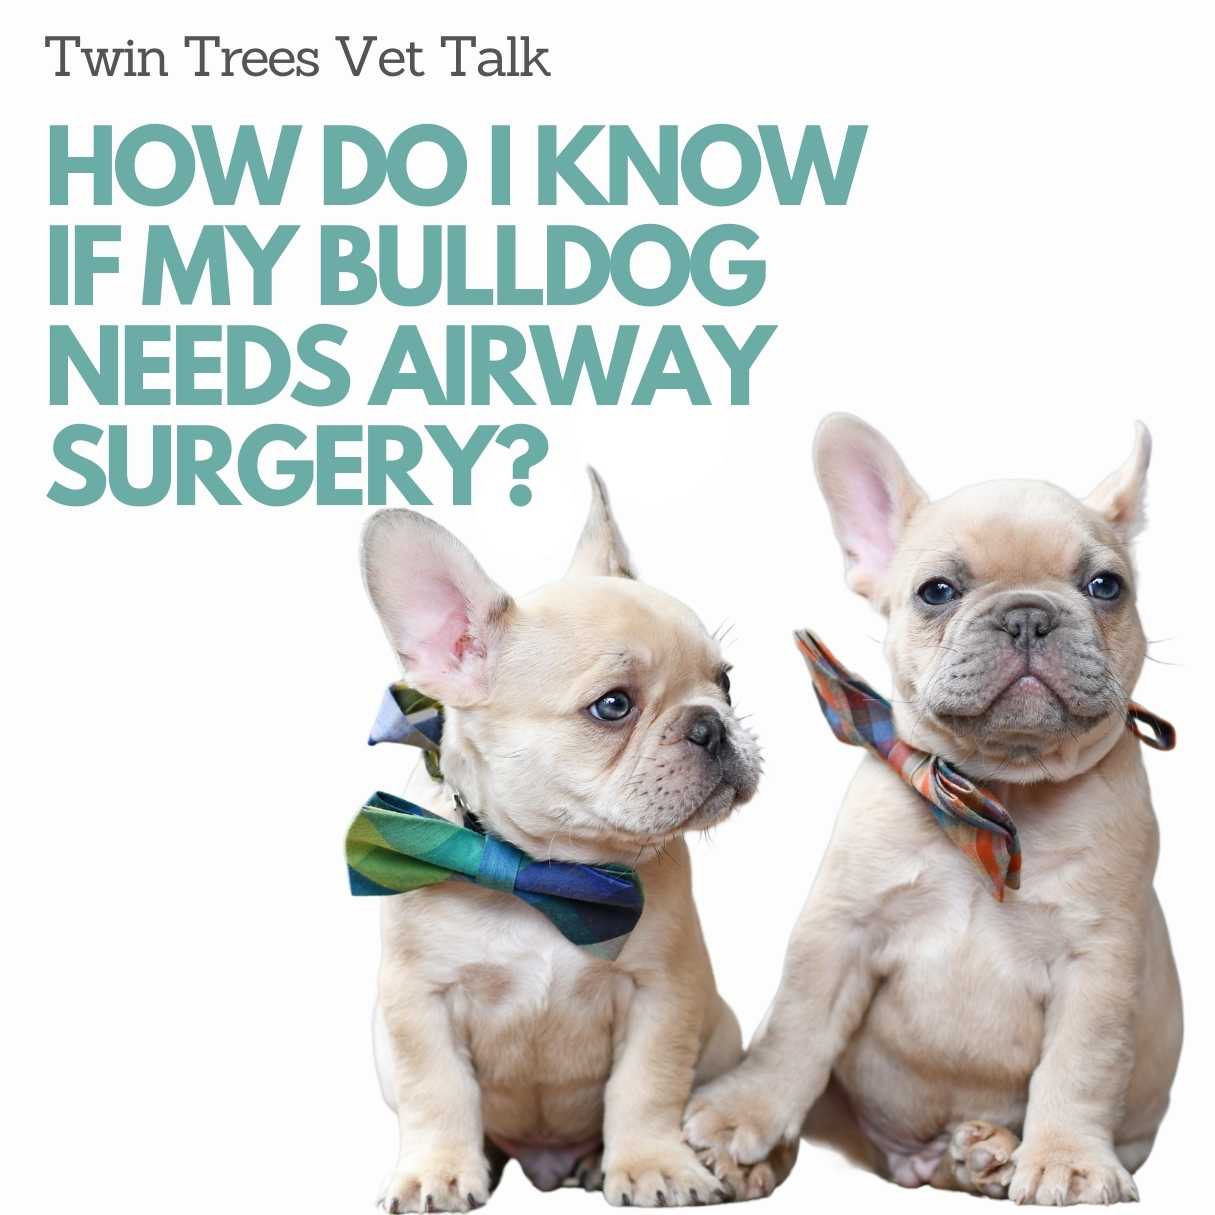 How Do I Know If My Bulldog Needs Airway Surgery? │ Twin Trees Vet Talk (FREE VET ADVICE PODCAST)